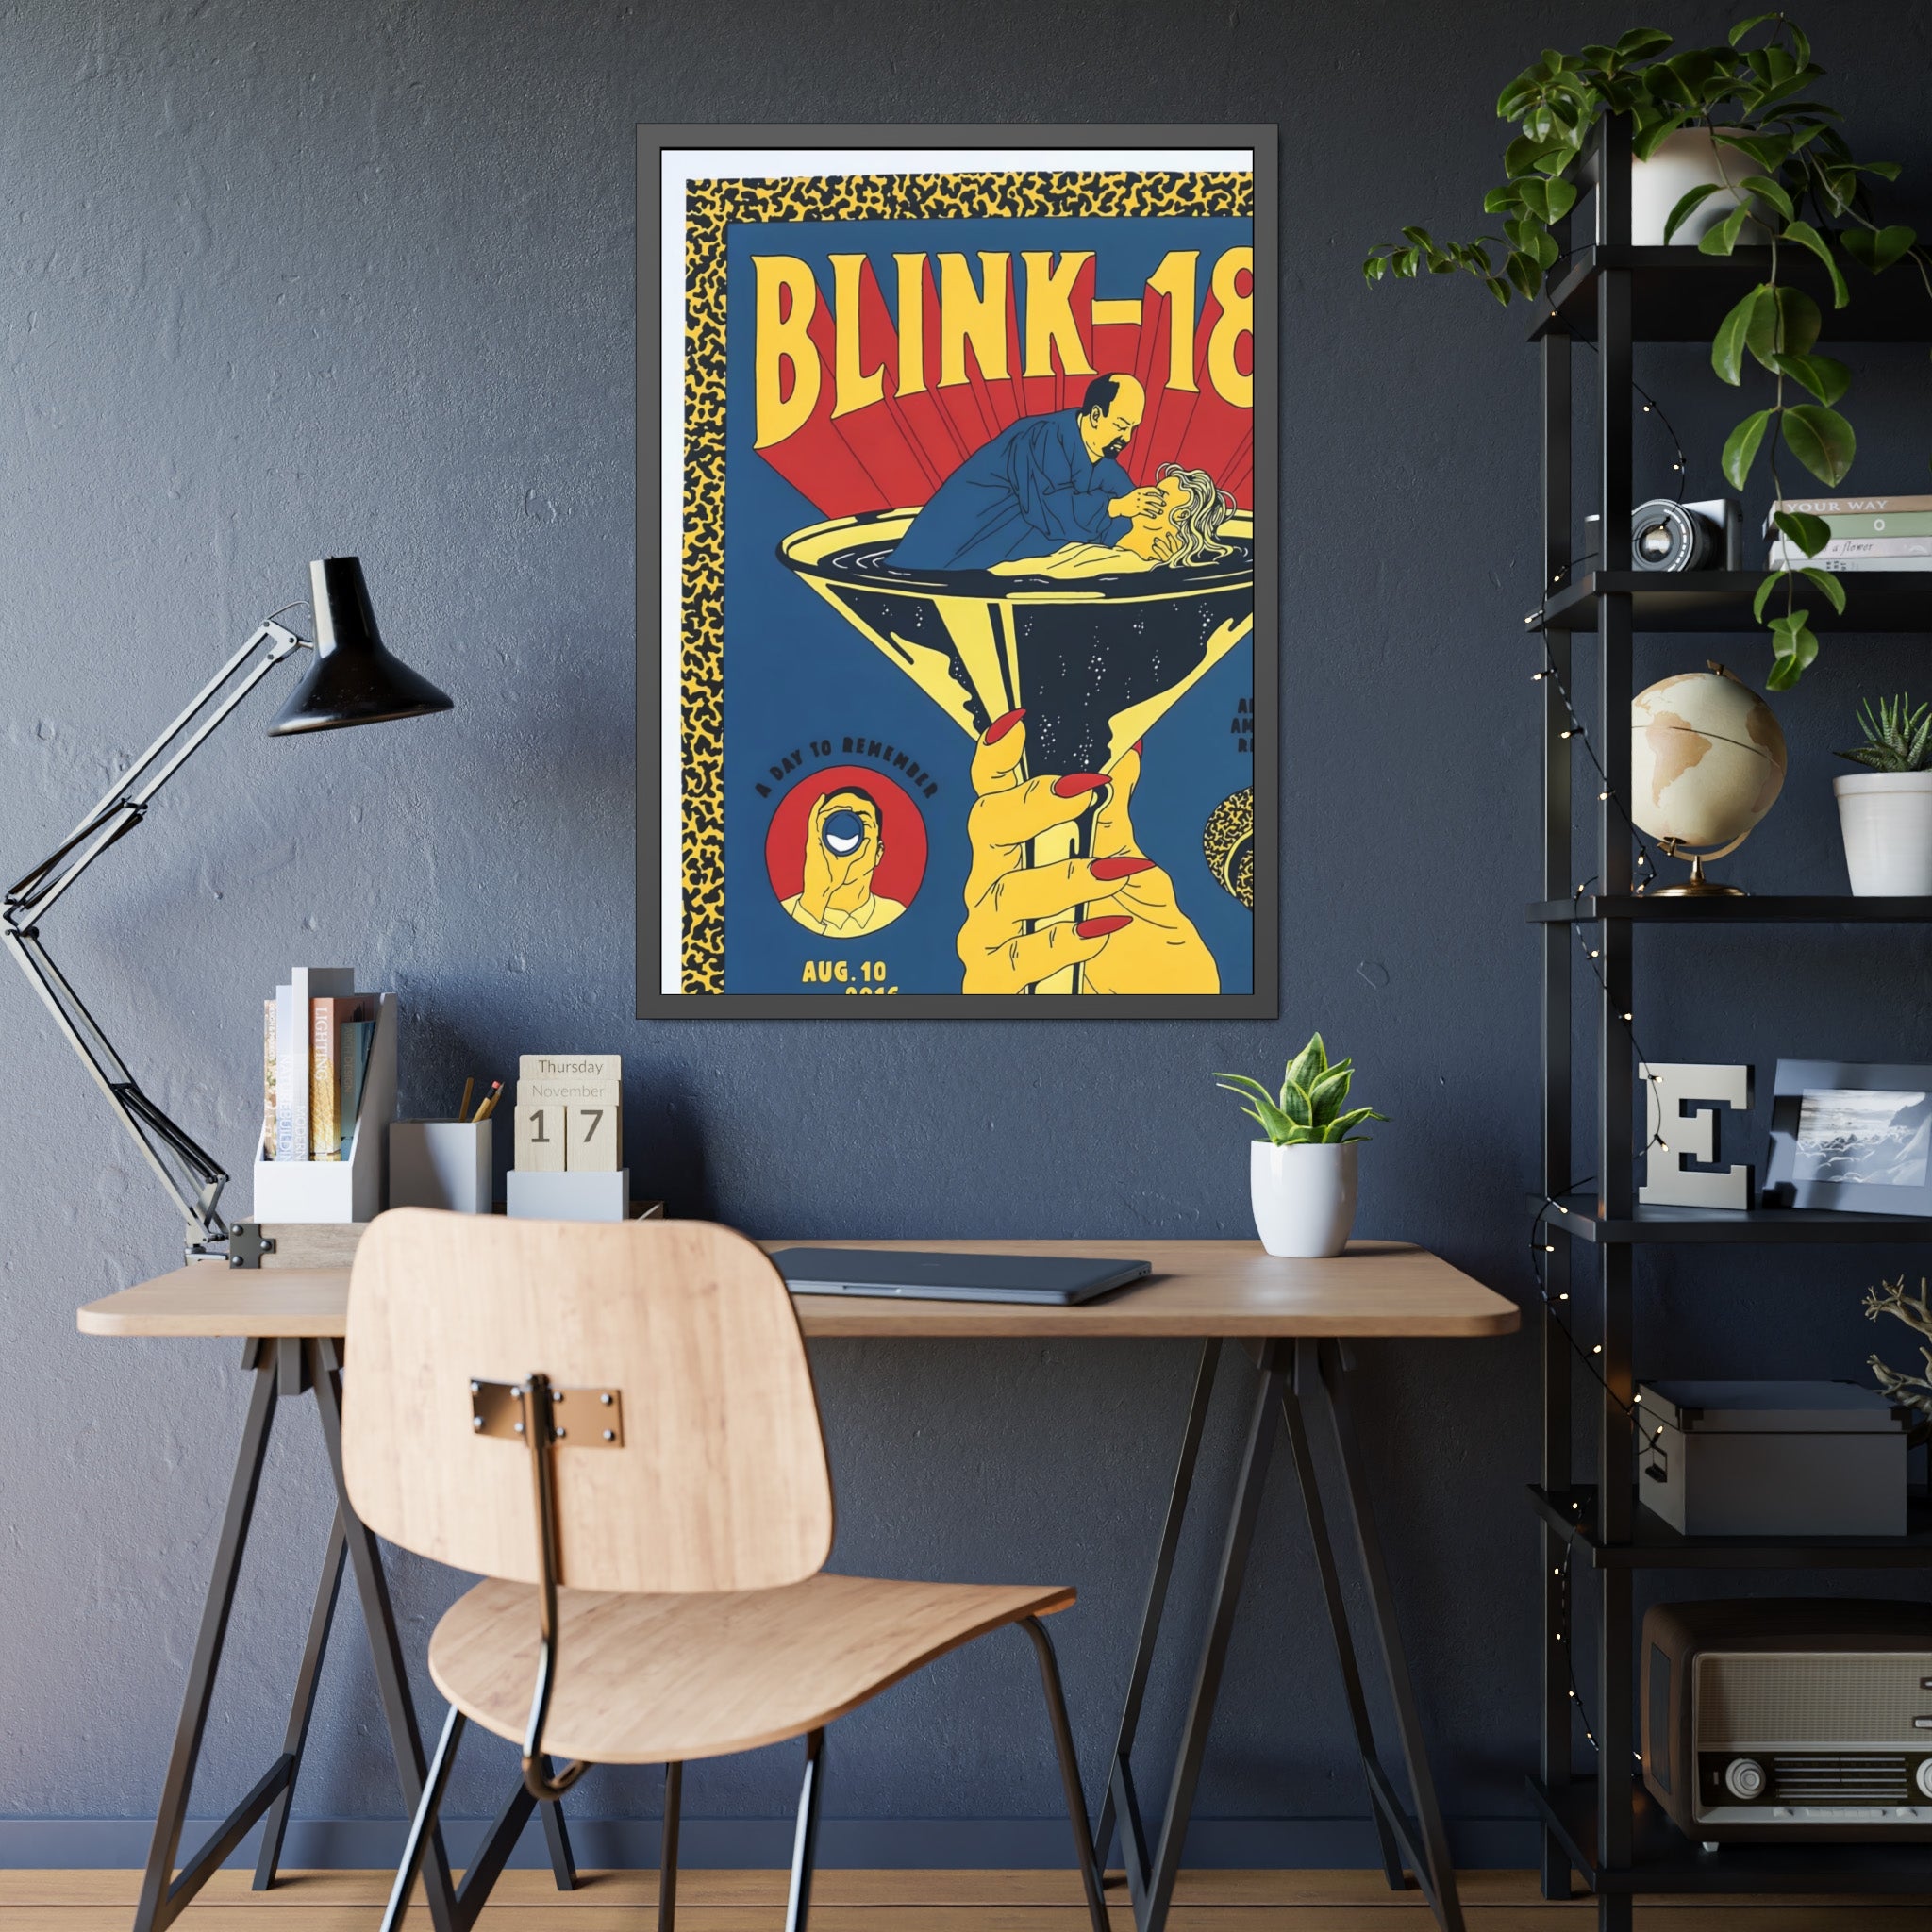 Blink-182 Concert Poster